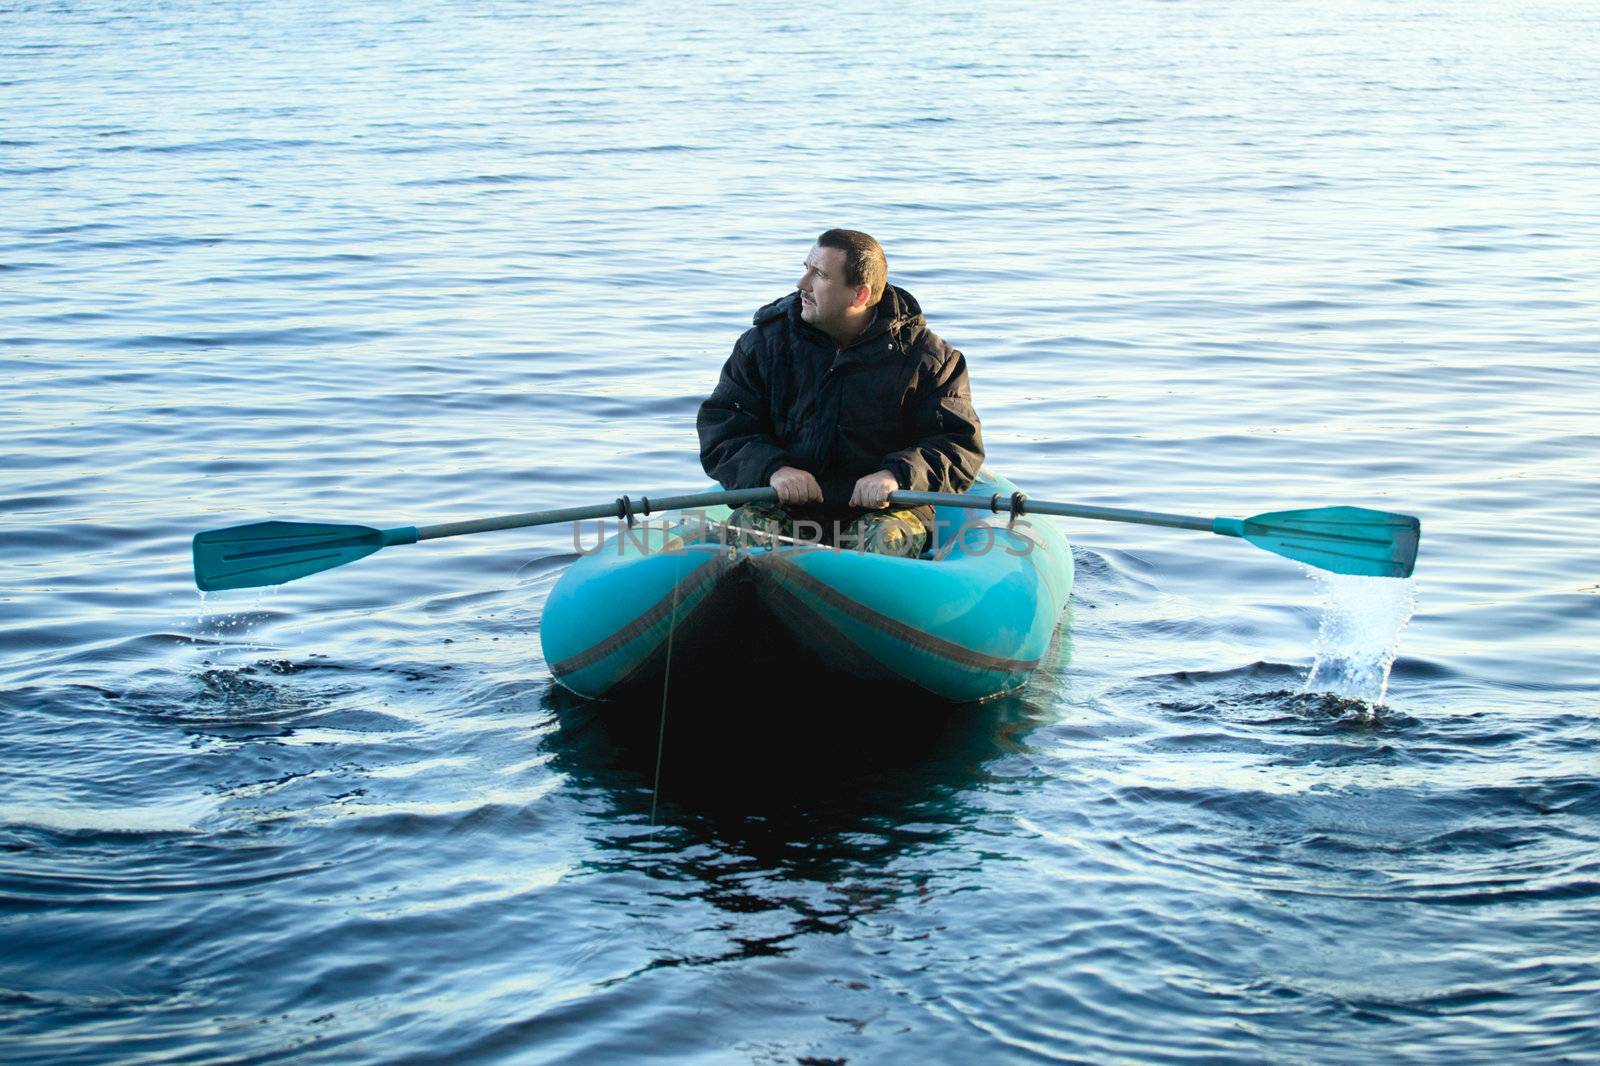 Fisherman in Rubber Boat by petr_malyshev